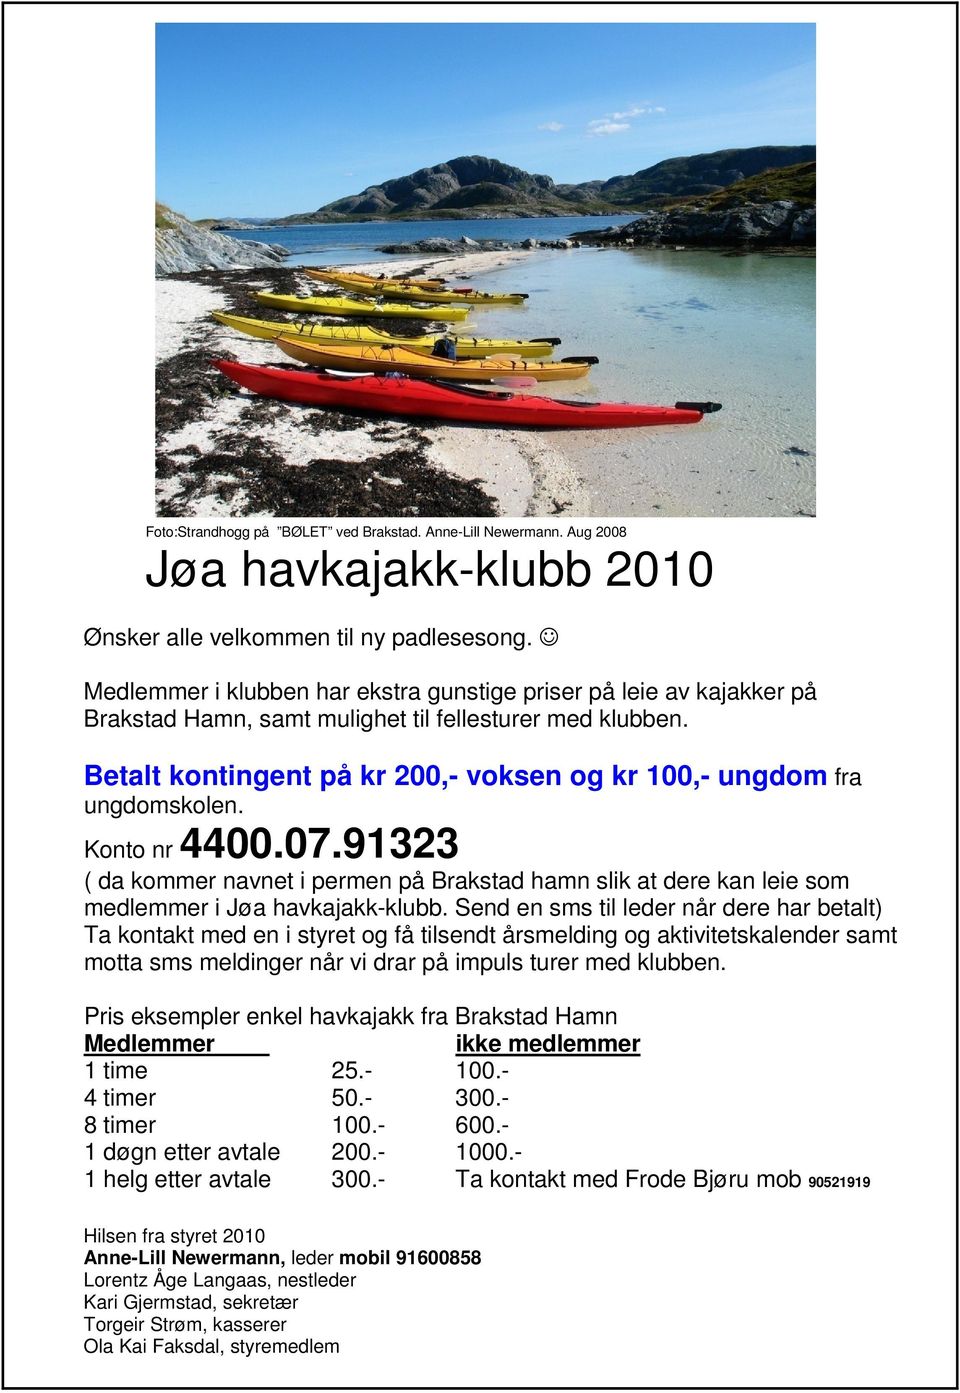 Betalt kontingent på kr 200,- voksen og kr 100,- ungdom fra ungdomskolen. Konto nr 4400.07.91323 ( da kommer navnet i permen på Brakstad hamn slik at dere kan leie som medlemmer i Jøa havkajakk-klubb.